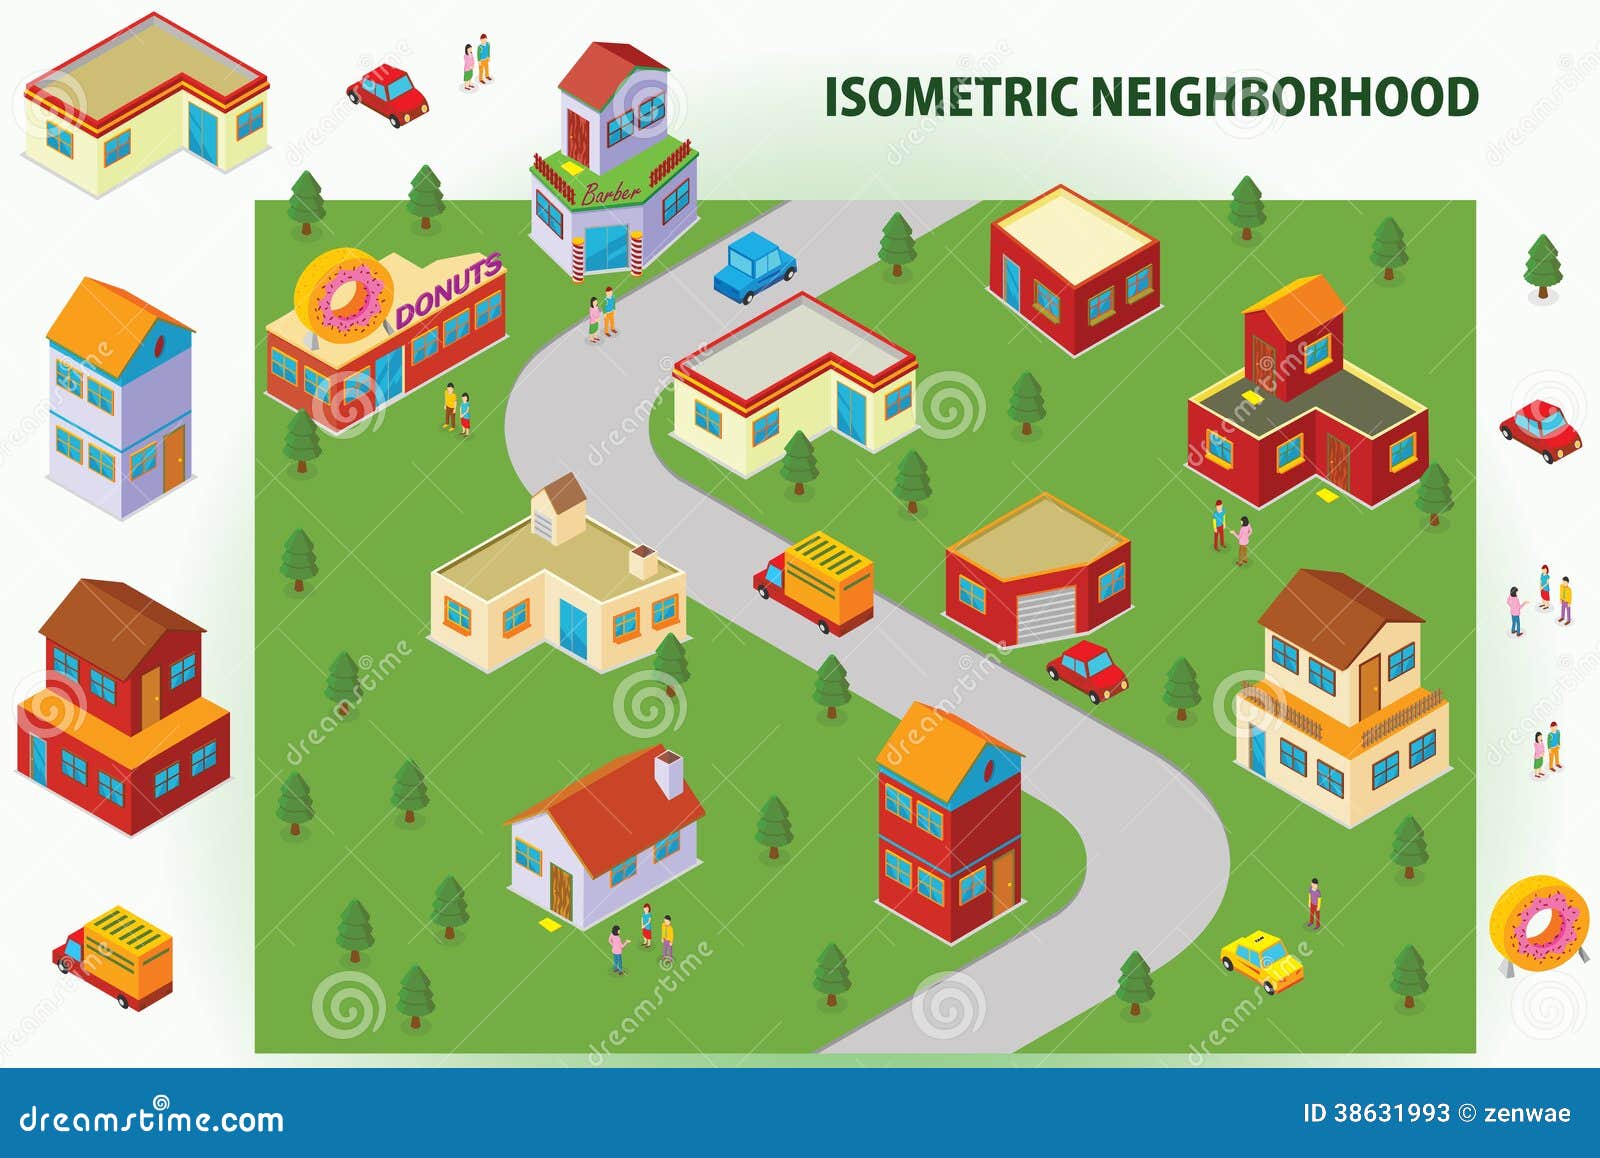 isometric neighborhood